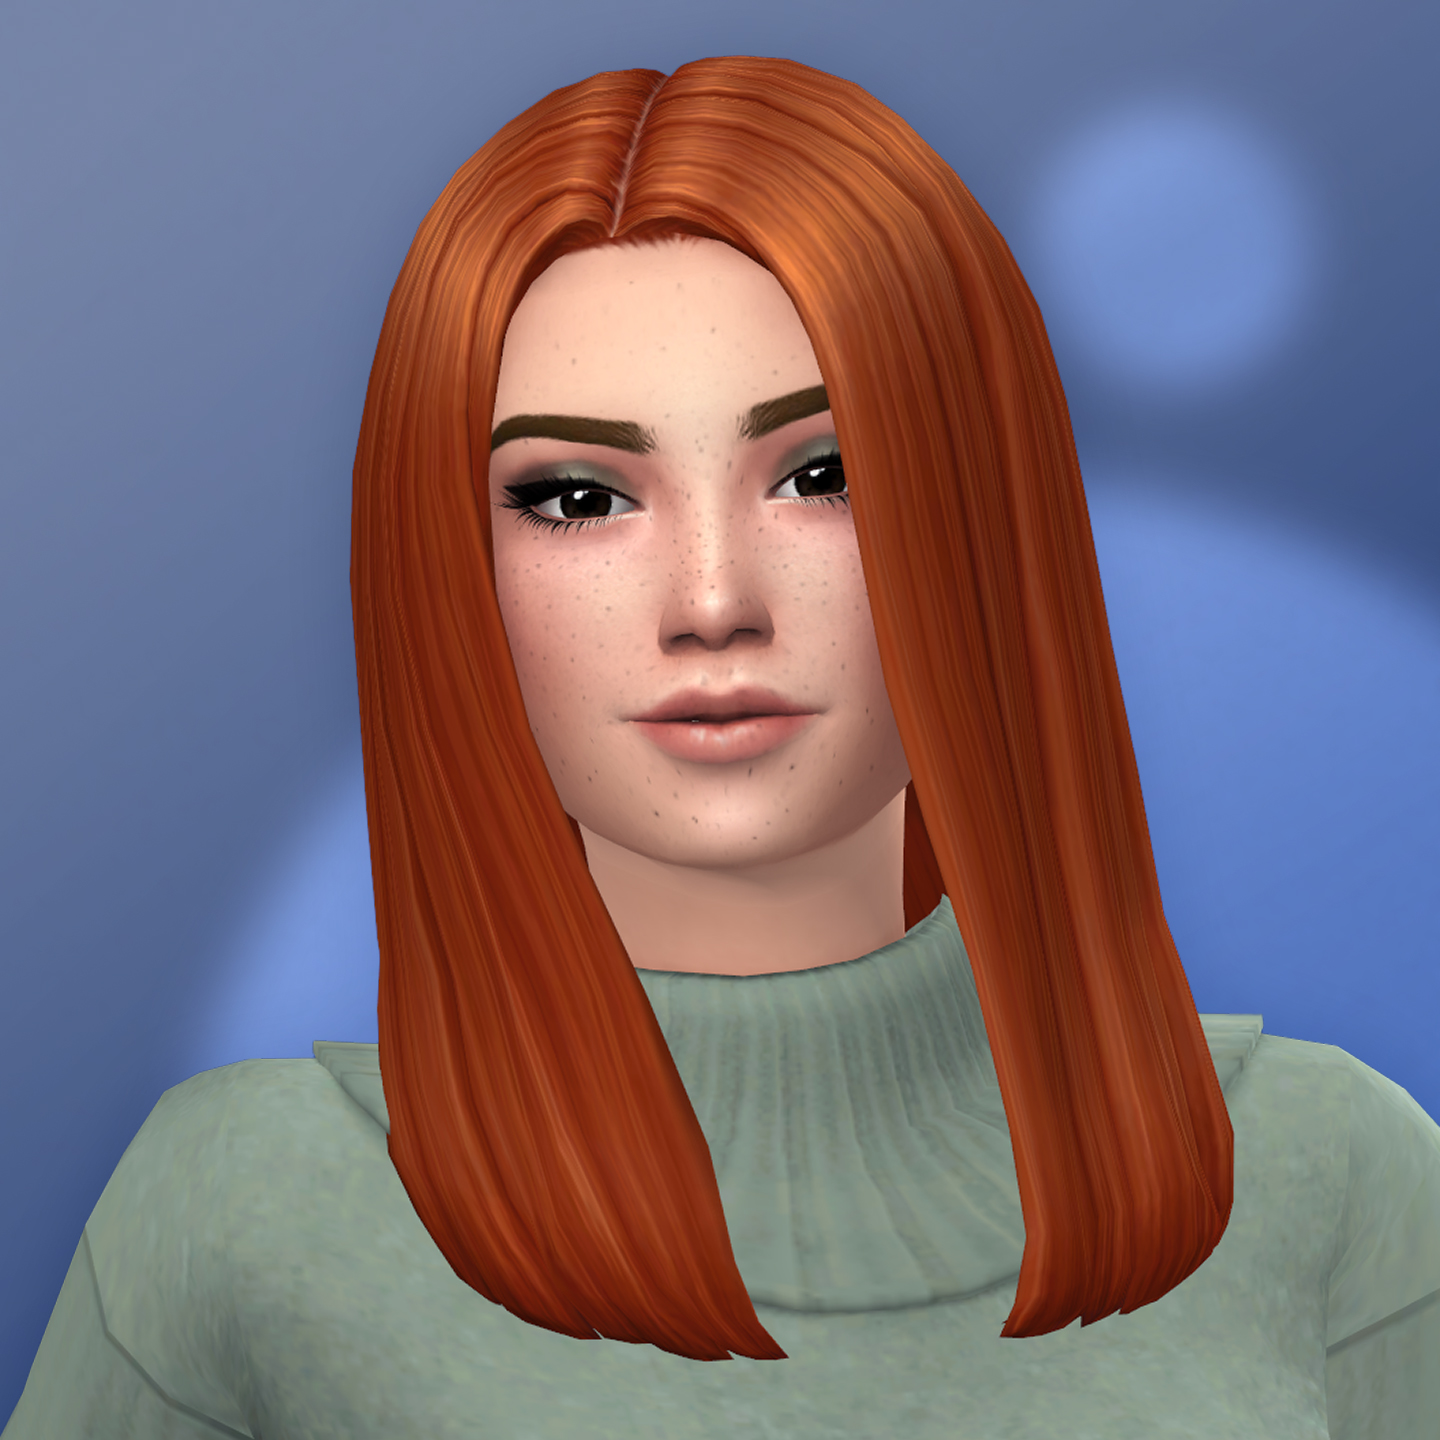 Images - QICC - Dina Hair - Create a Sim - The Sims 4 - CurseForge